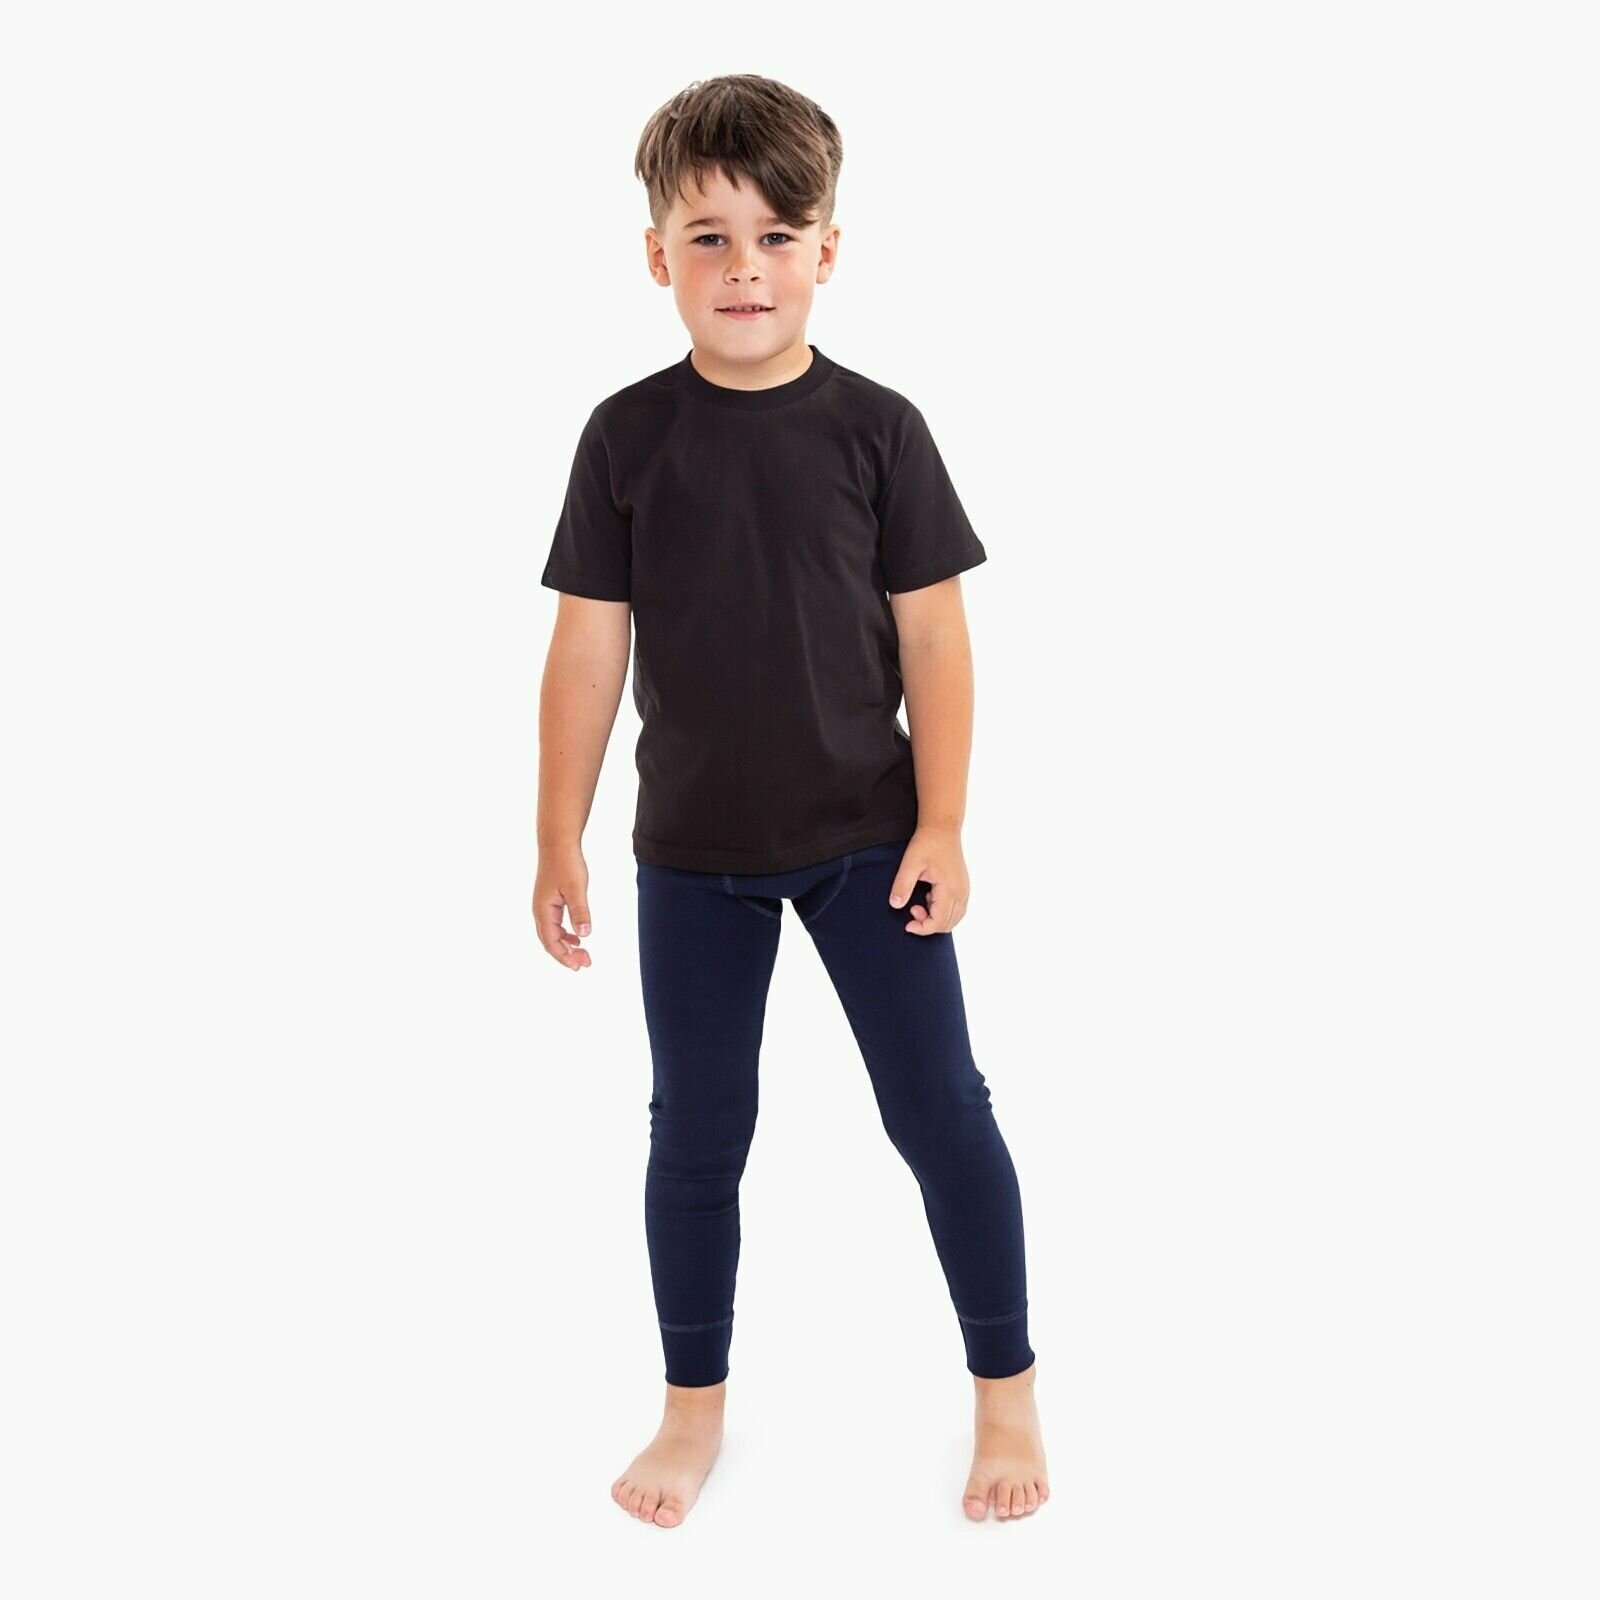 Кальсоны для мальчика (термо), цвет темно-синий, рост 140 см (38)